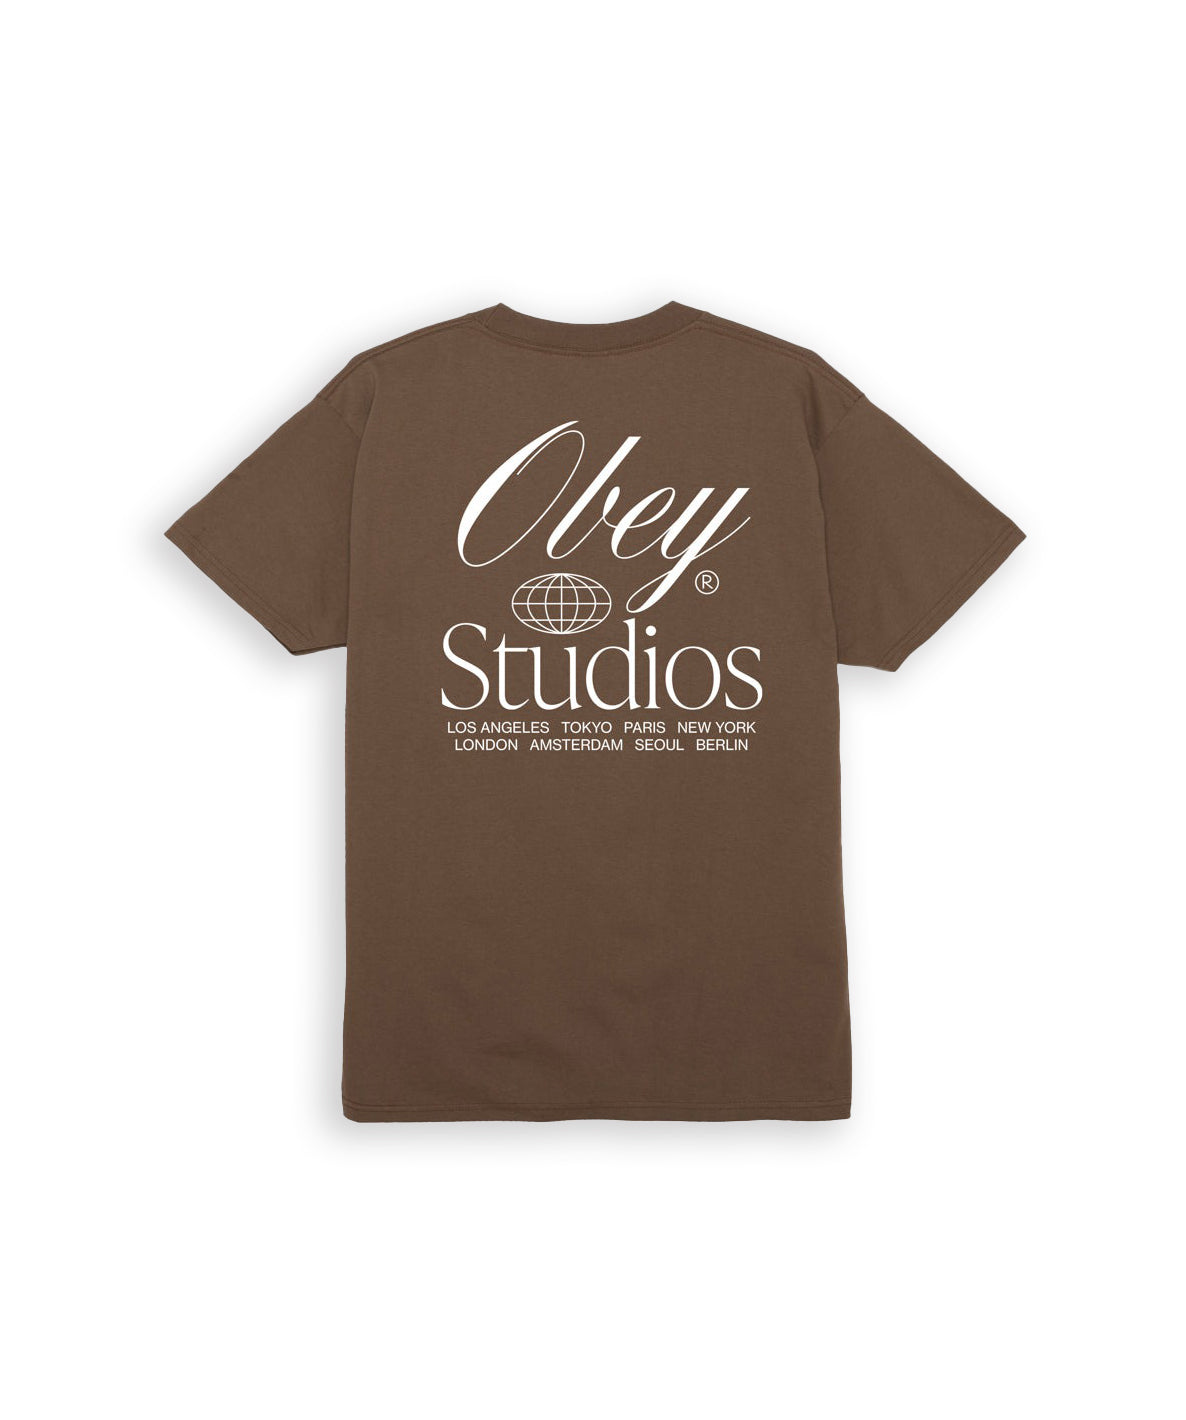 Obey Studios Worldwide T-Shirt Marrone